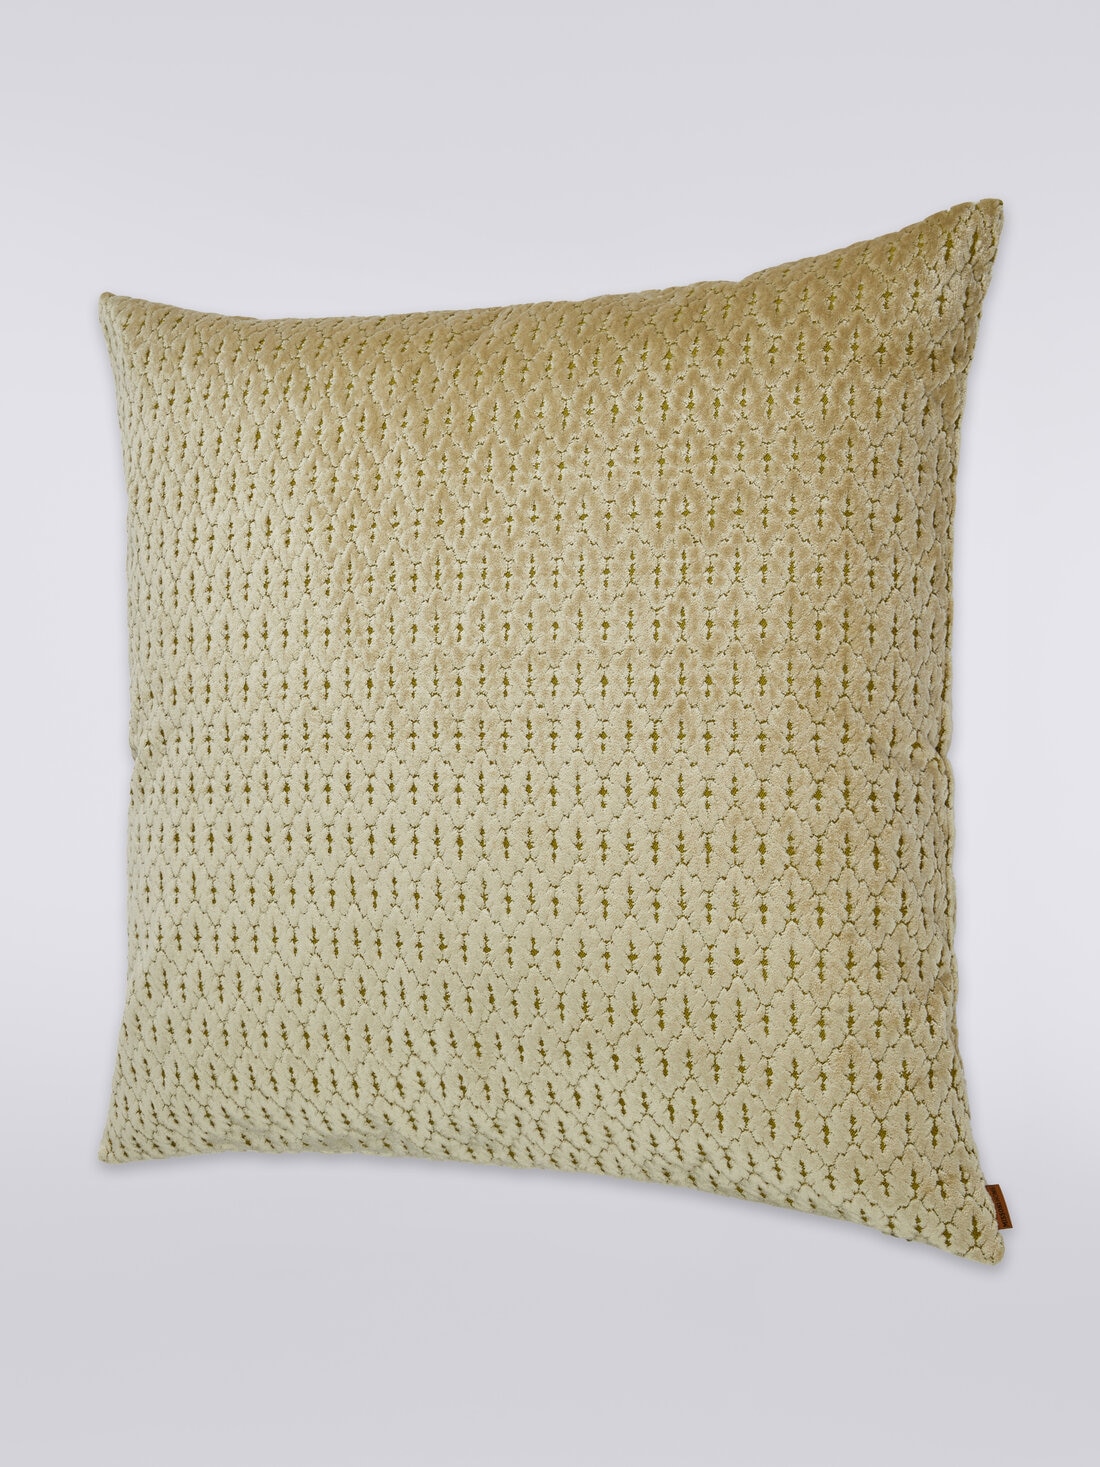 Bergerac cushion 60x60 cm, Multicoloured  - 8051275607403 - 1